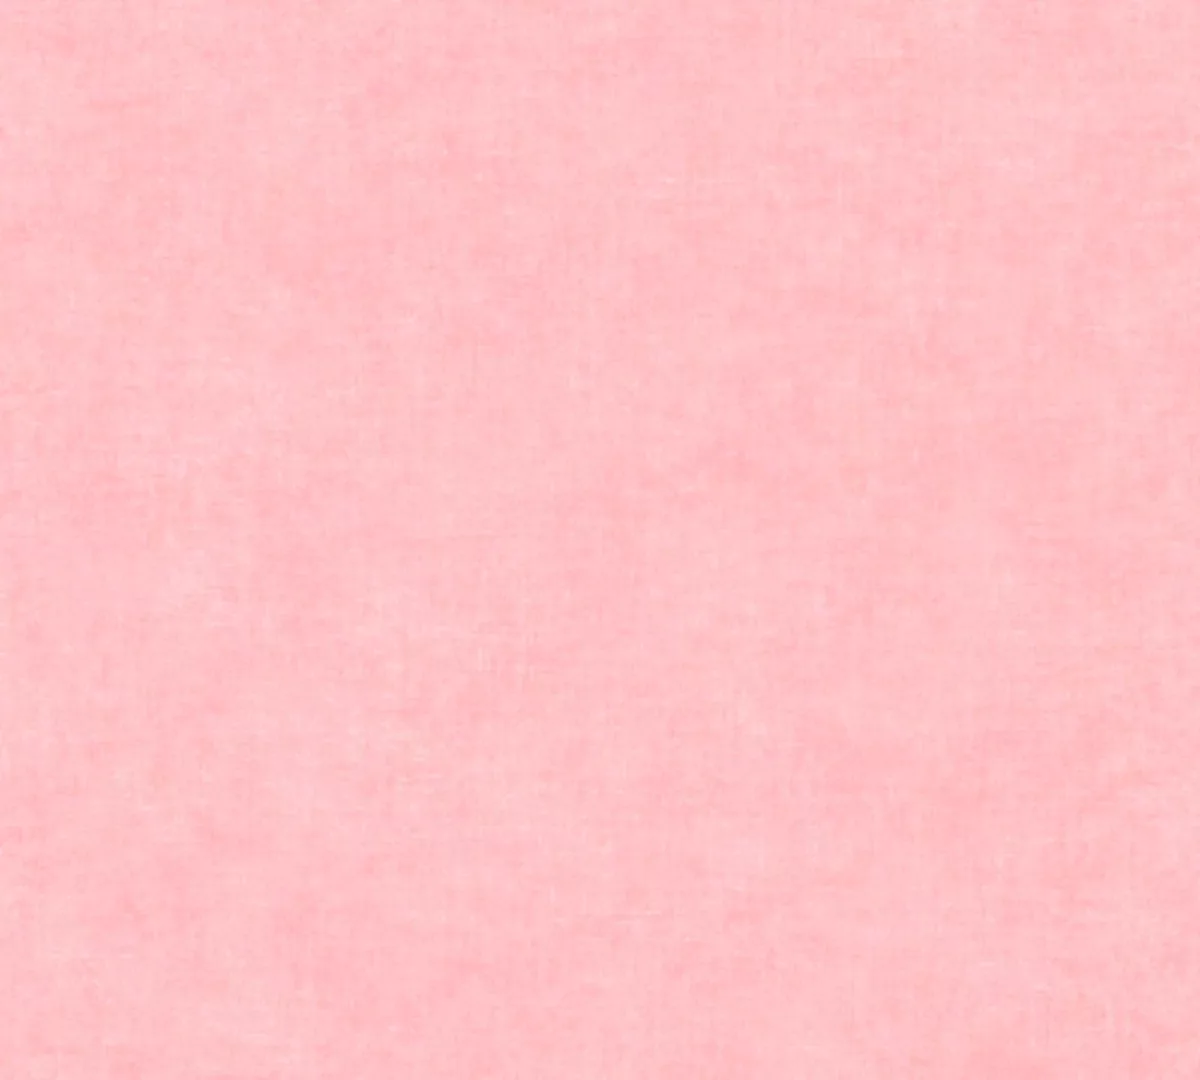 Bricoflor Mädchenzimmer Tapete in Rosa Einfarbige Tapete in Textiloptik Ide günstig online kaufen